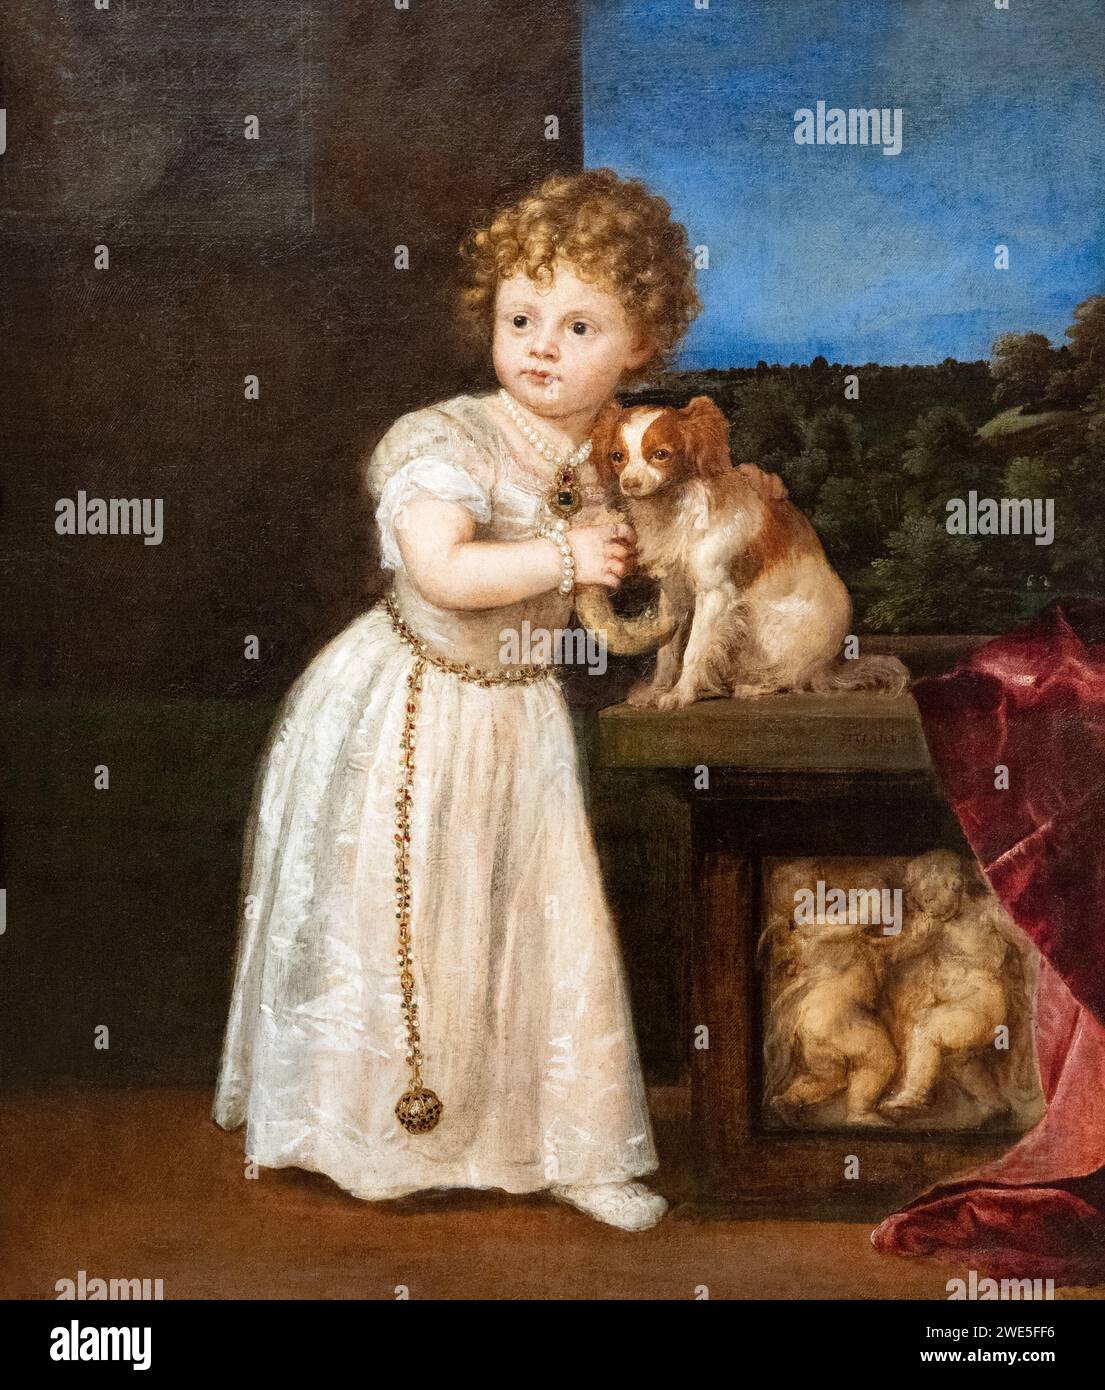 Tizianische Malerei; 'Clarissa Strozzi im Alter von zwei Jahren', 1542; italienisches Renaissanceporträt, eines der frühesten Porträts eines Kindes. 16. Jahrhundert. Stockfoto